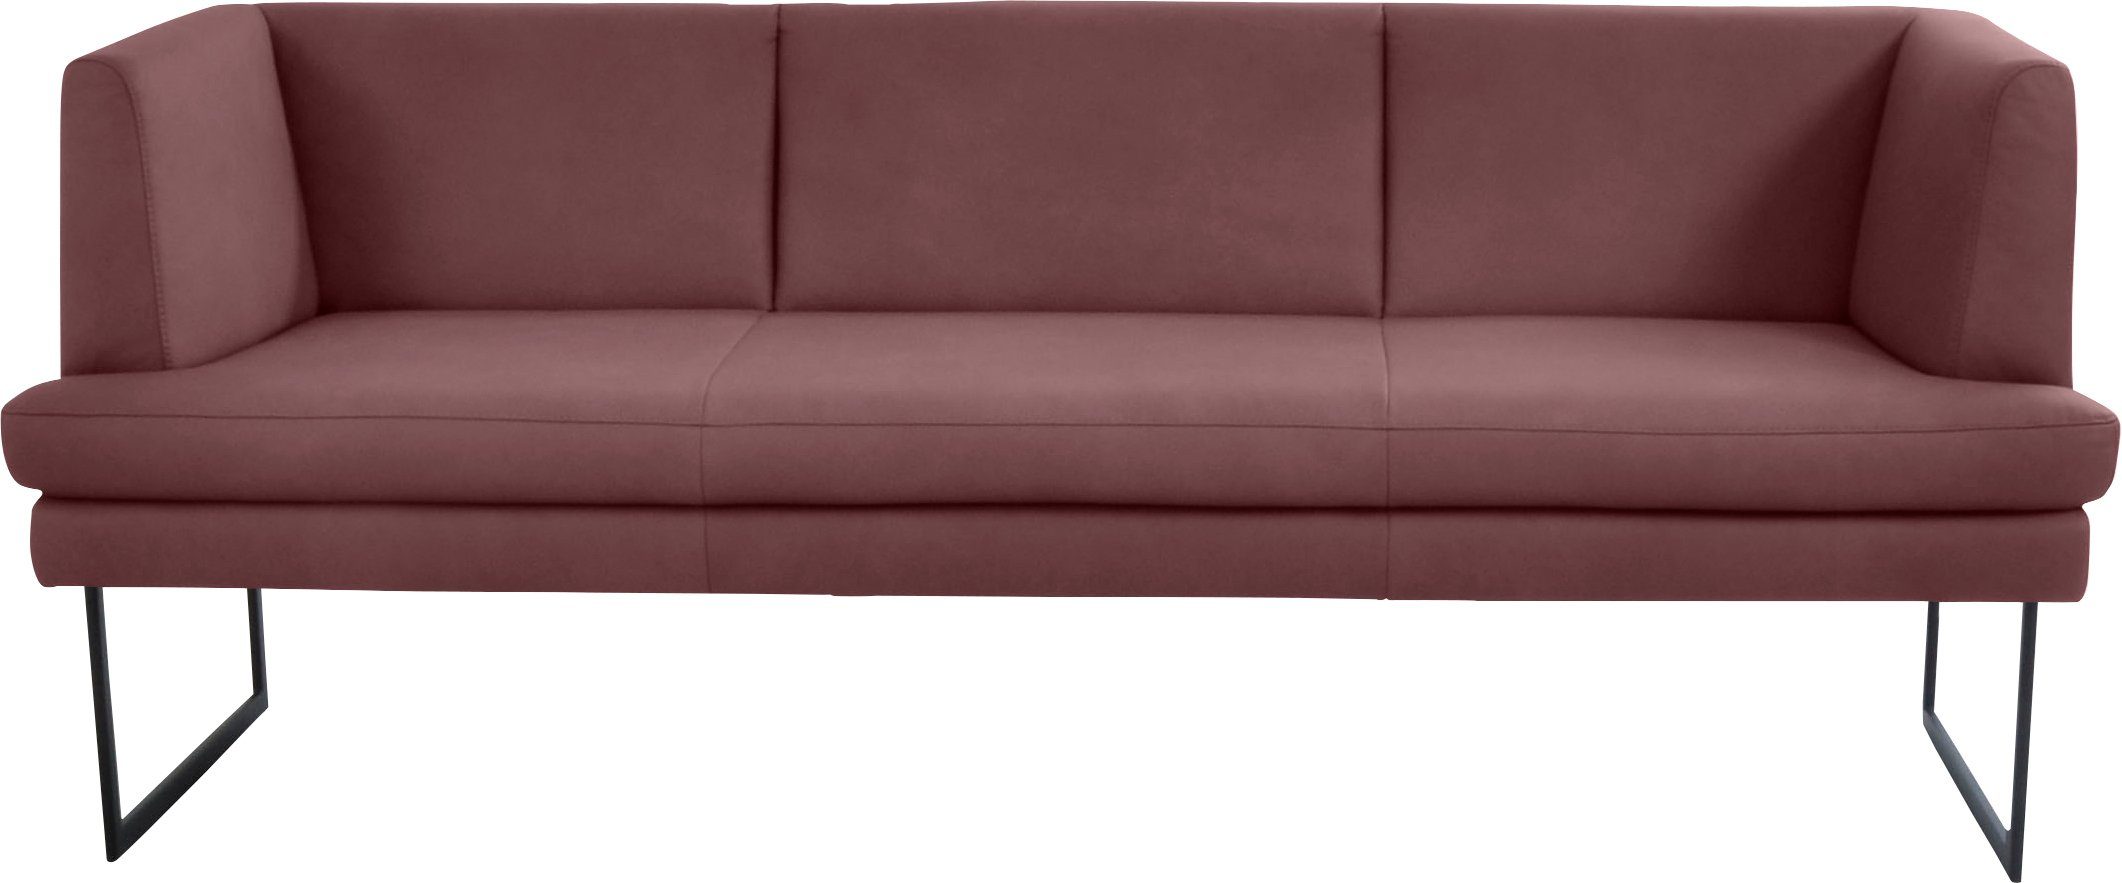 Preisvergleich für K+W Komfort & Wohnen Drehstuhl »Drive«, Stuhl mit  federnder Sitzschale, Drehteller in Metall schwarz Struktur, BxHxT 52x63x94  cm, aus Leder, GTIN: 4255620903422